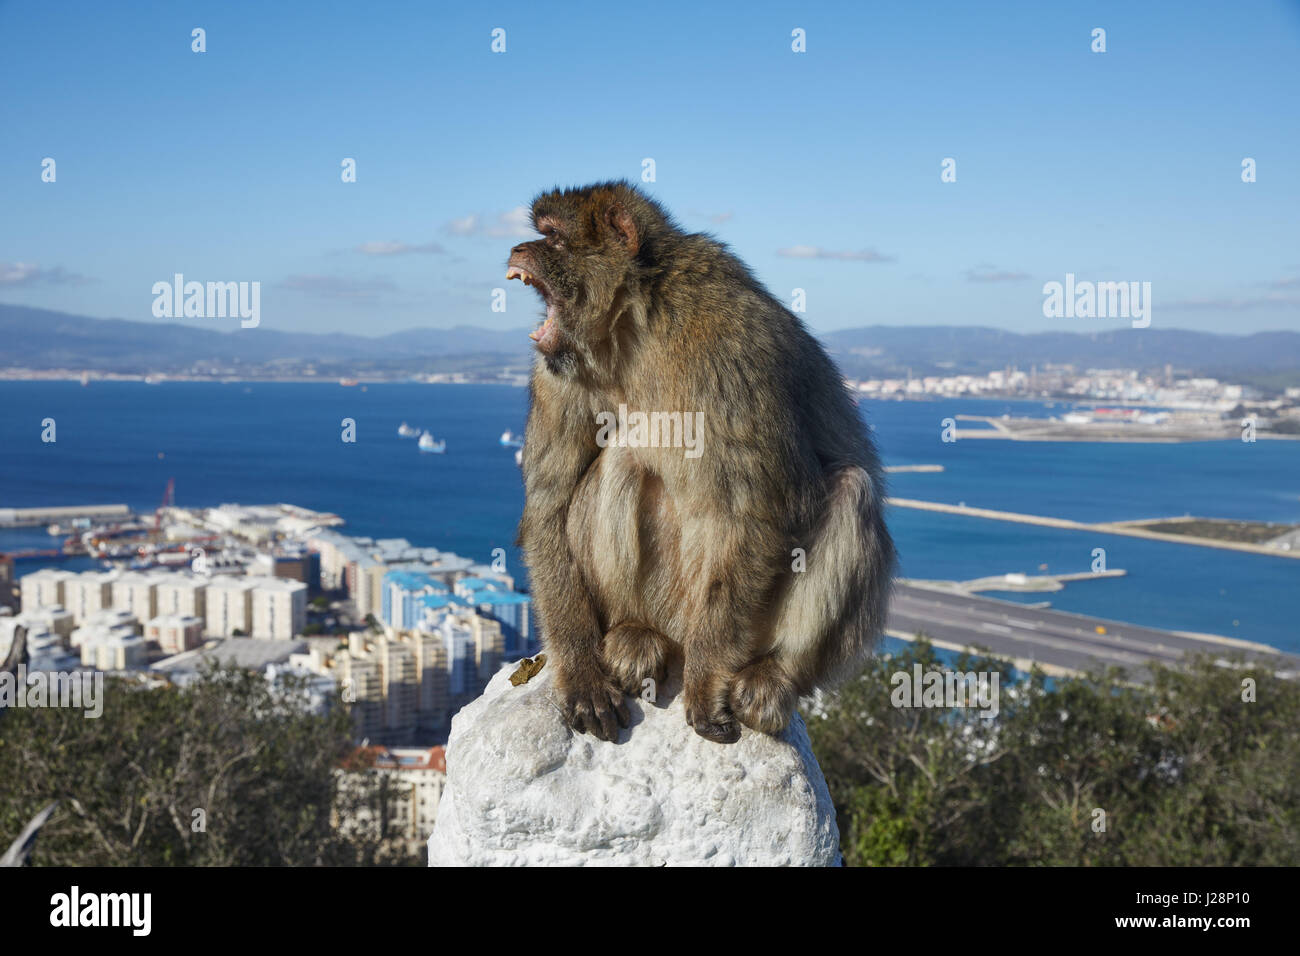 Gibraltar, monkey rock, un singe berbère se trouve de façon menaçante, avec sa bouche grande ouverte sur une balustrade, derrière elle la gorge la mer de Gibraltar avec un aéroport Banque D'Images